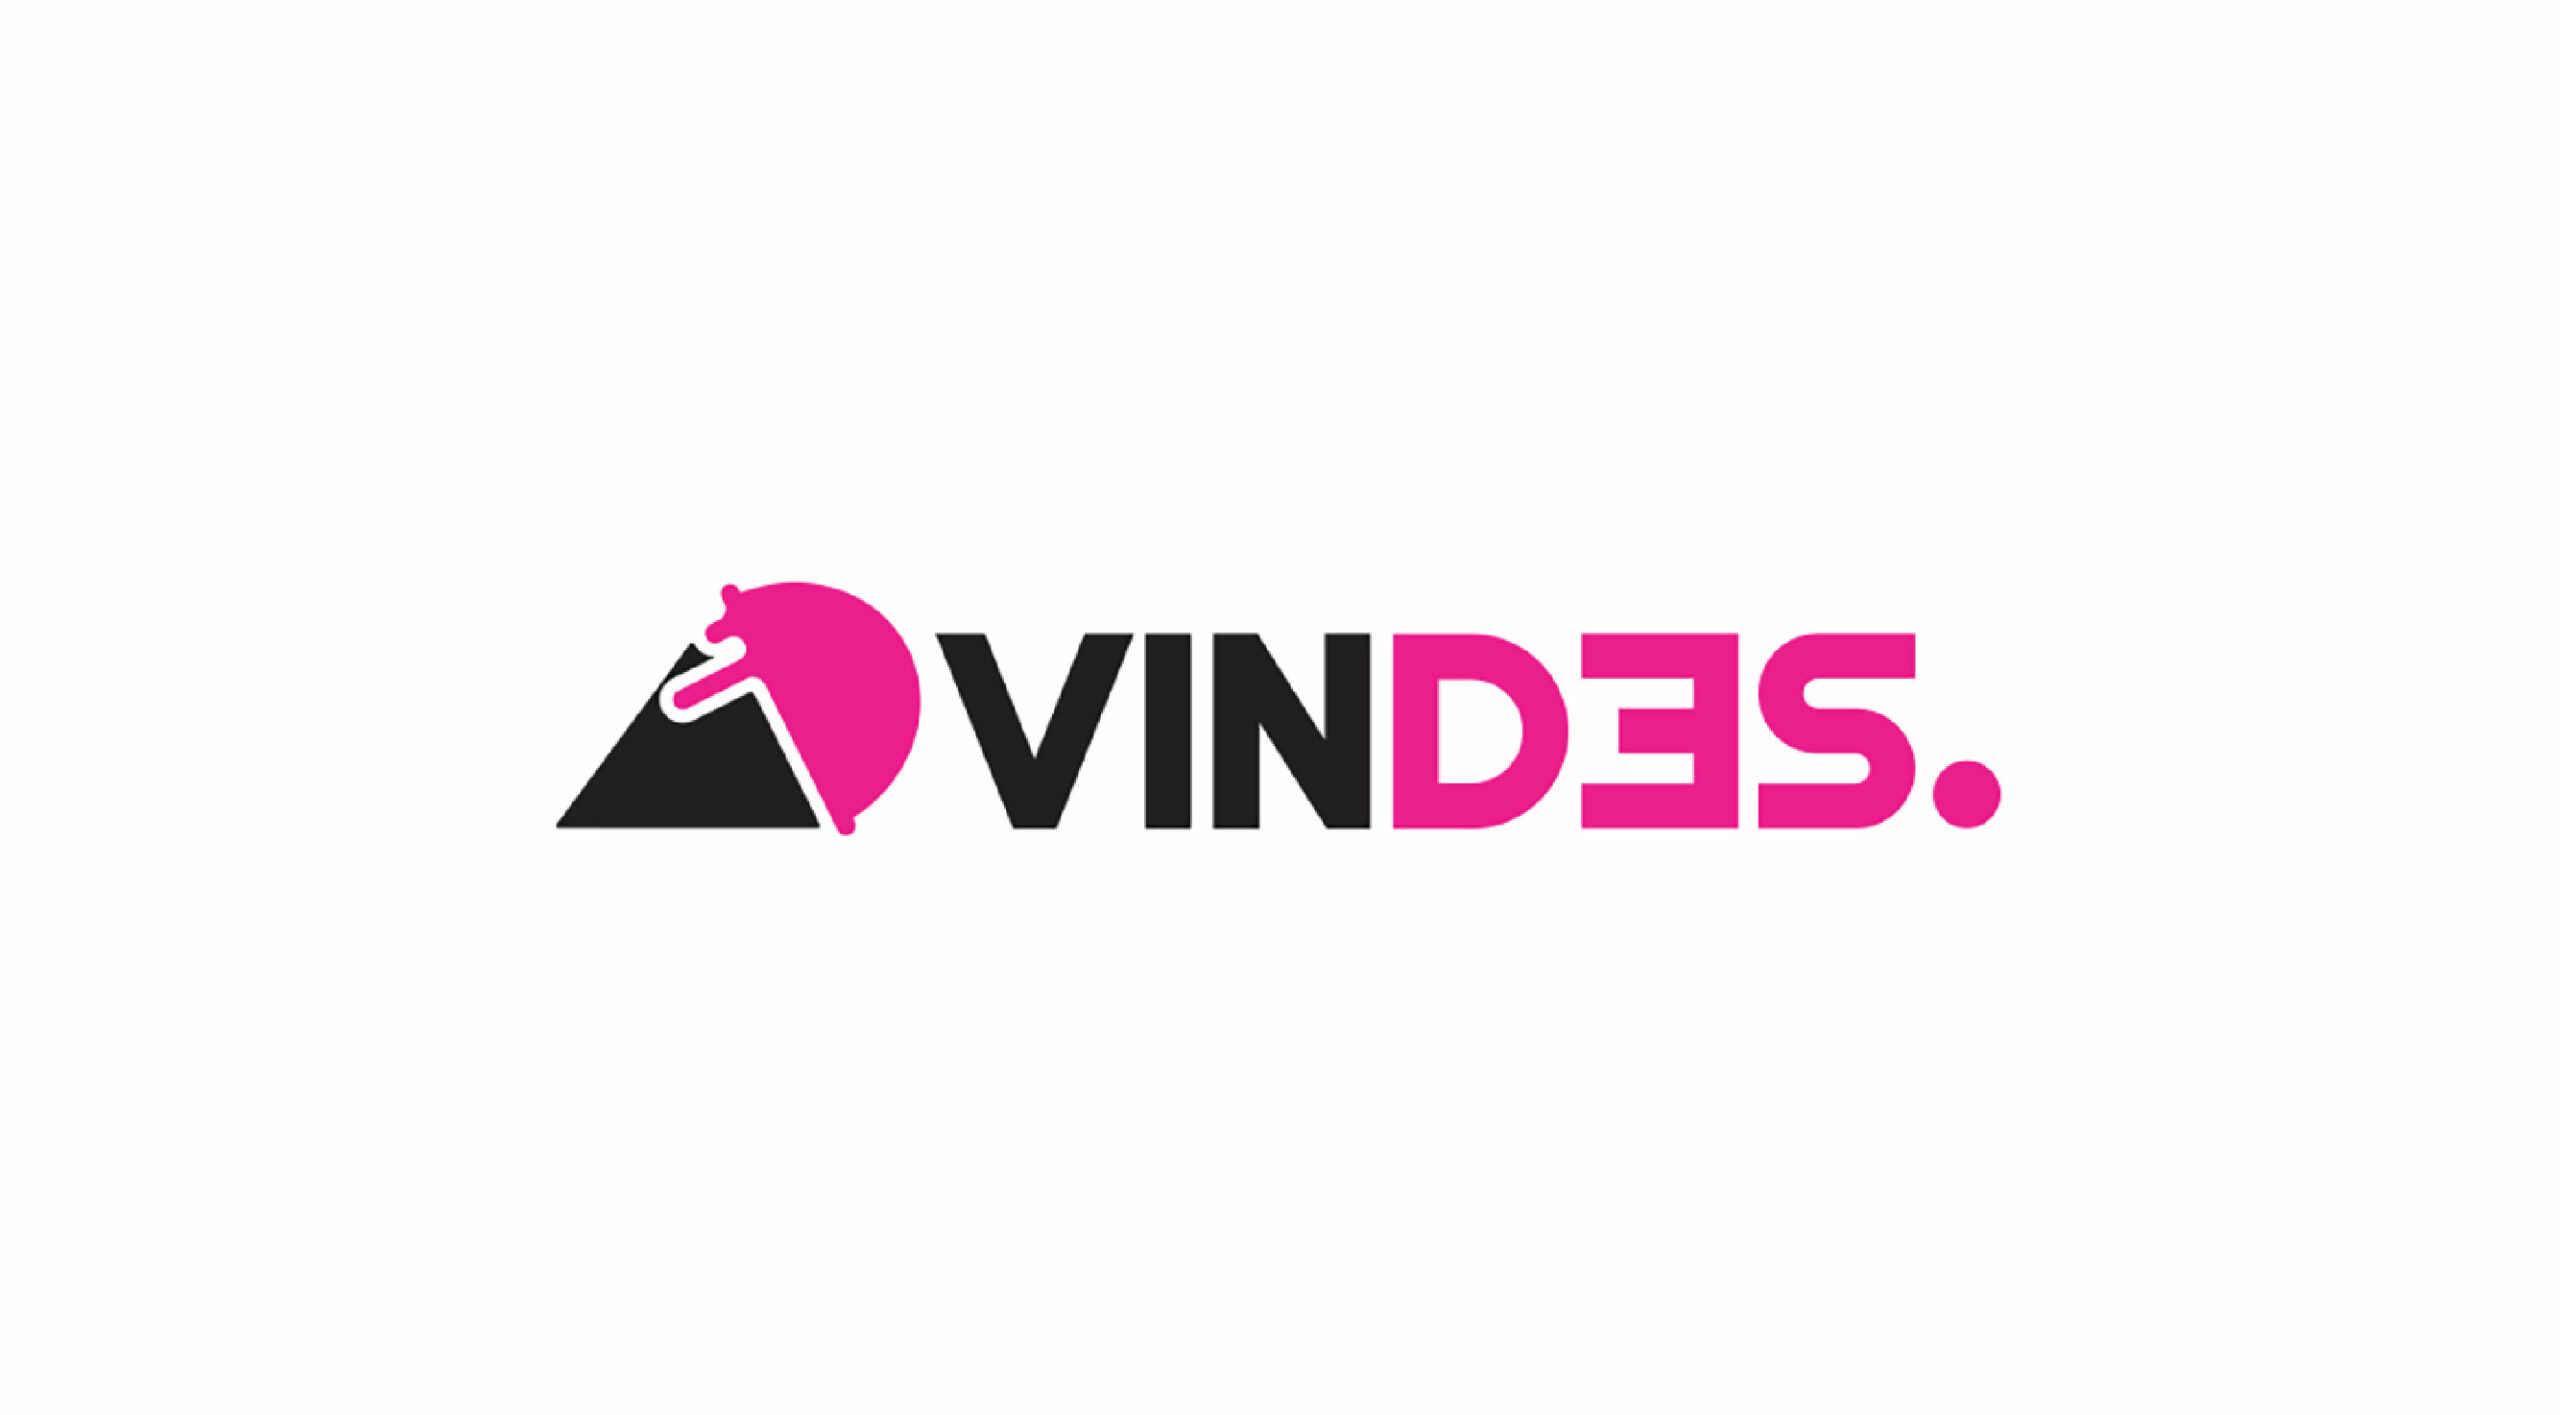 Lowongan Kerja PT Vakansi Dedikasi Semesta (VINDES Corp)